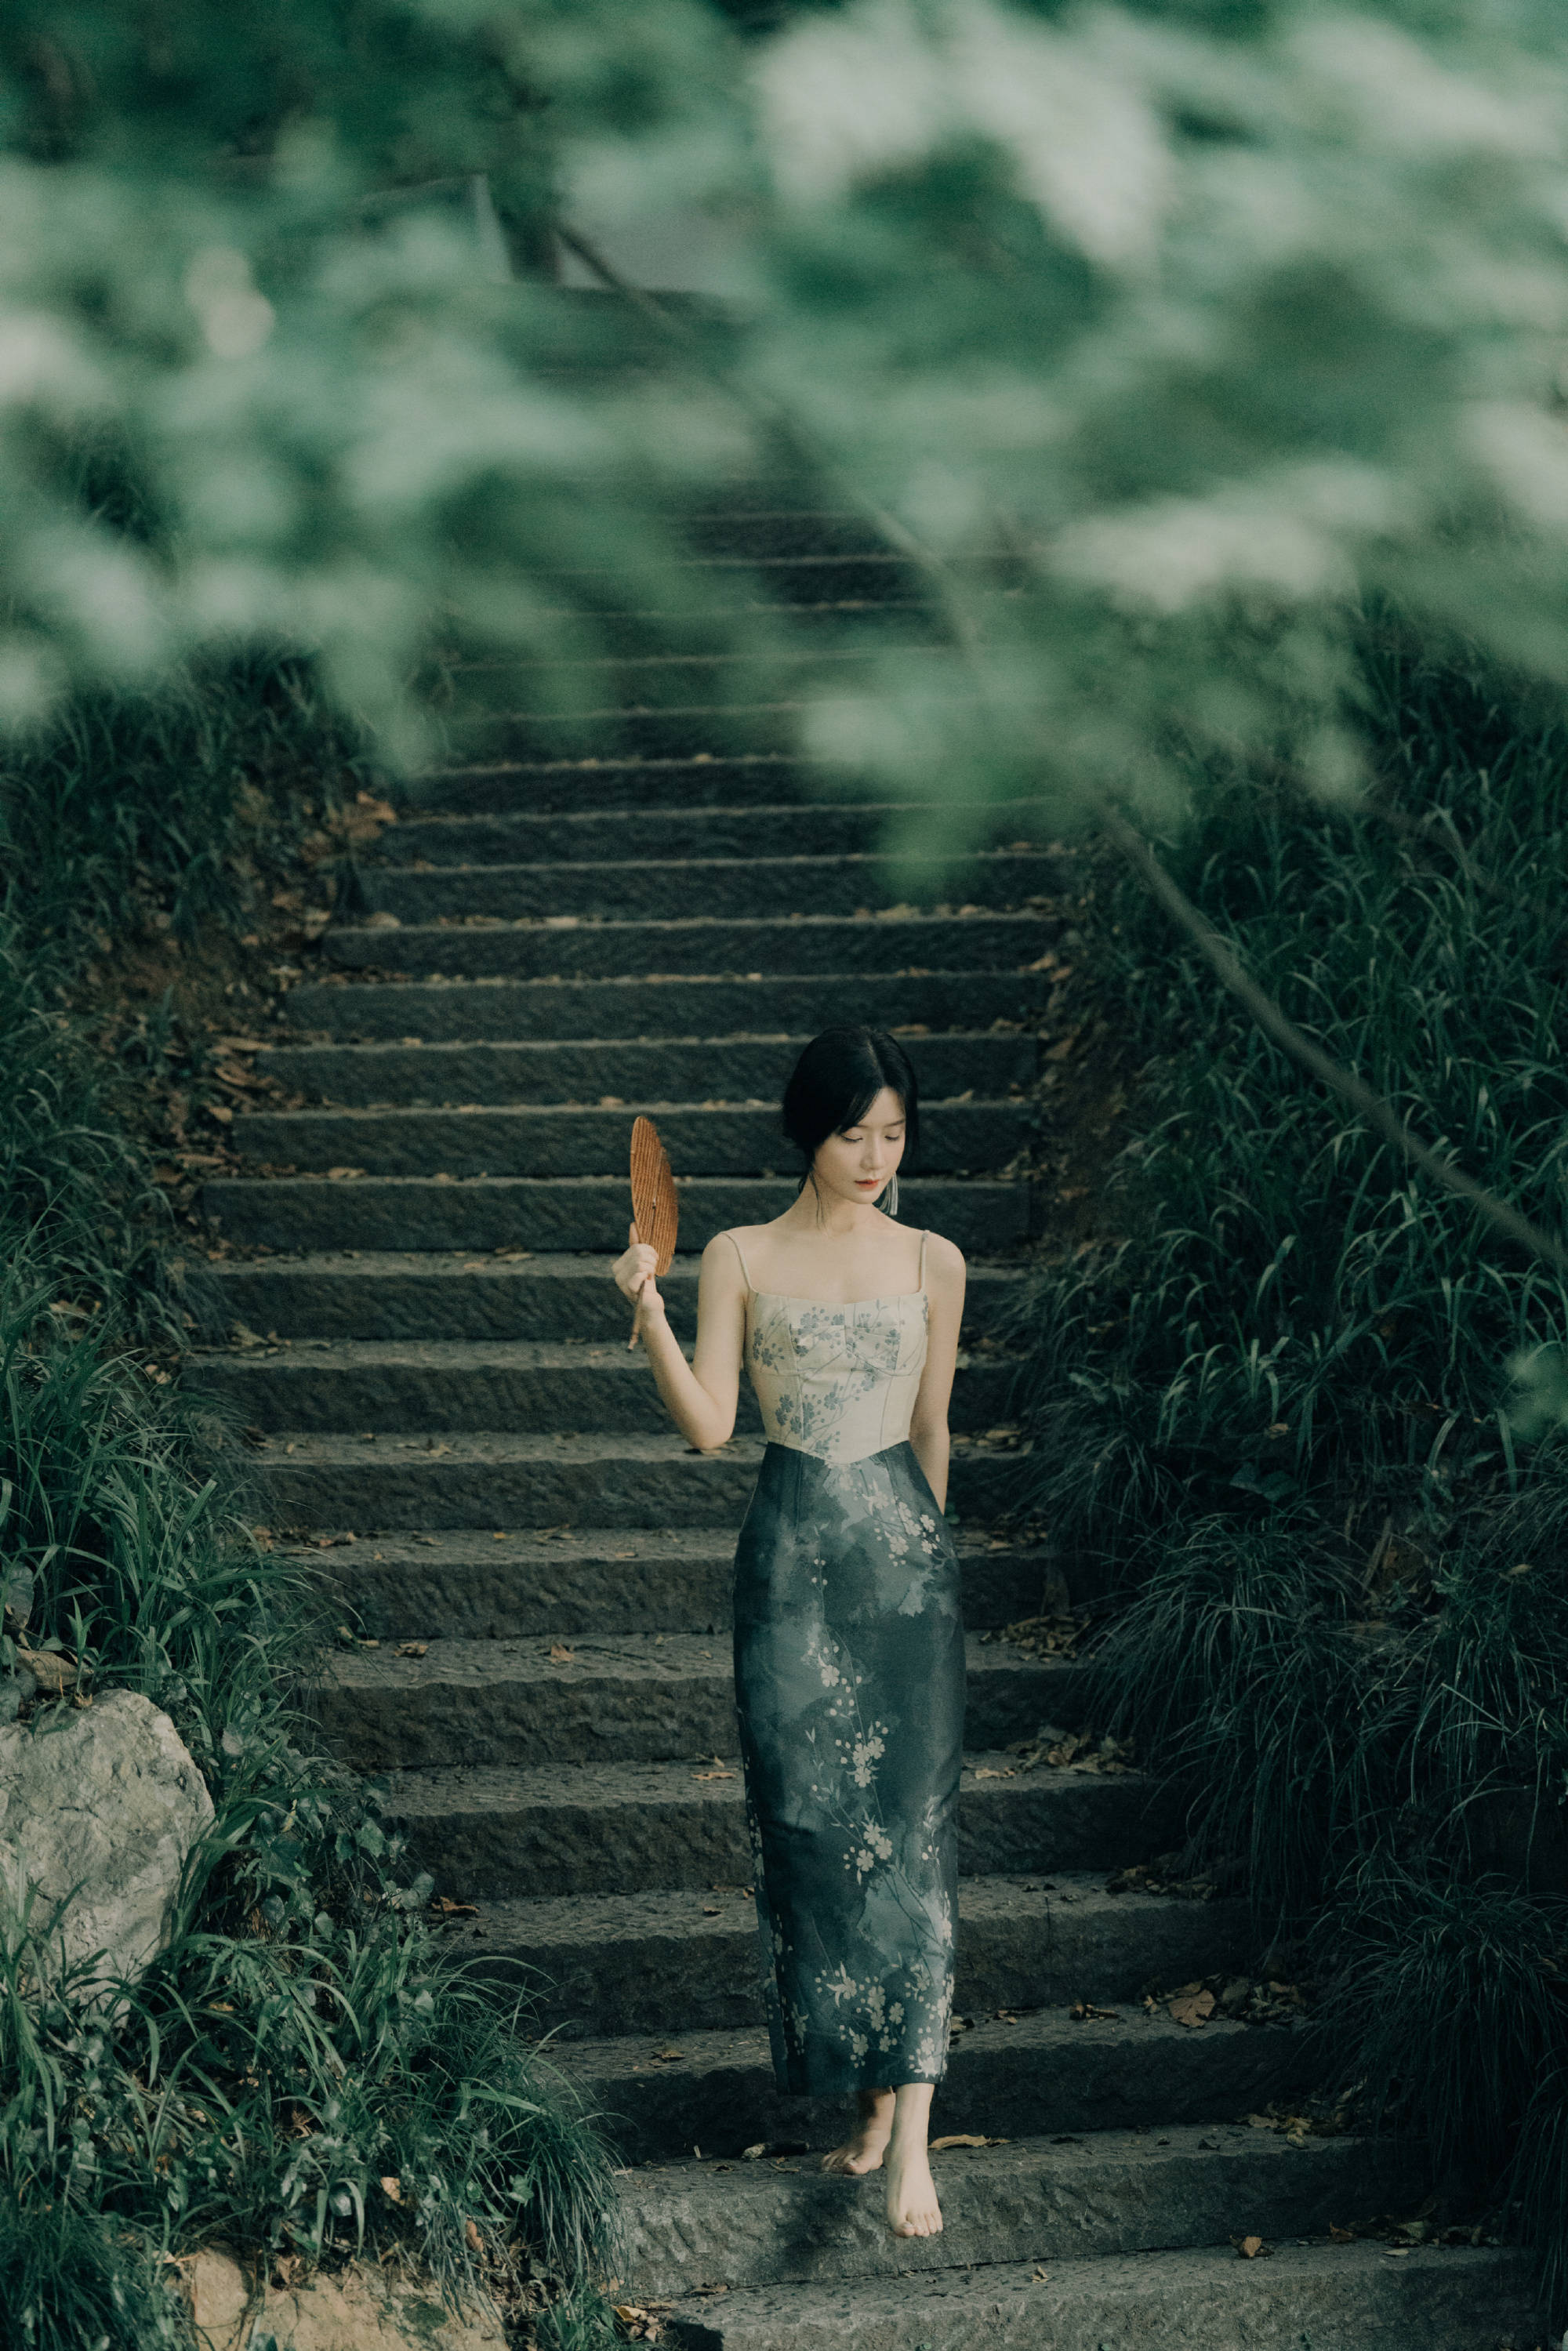 这几张照片是陈意涵远景拍摄的写真只见她赤脚走在阶梯上,站在水边